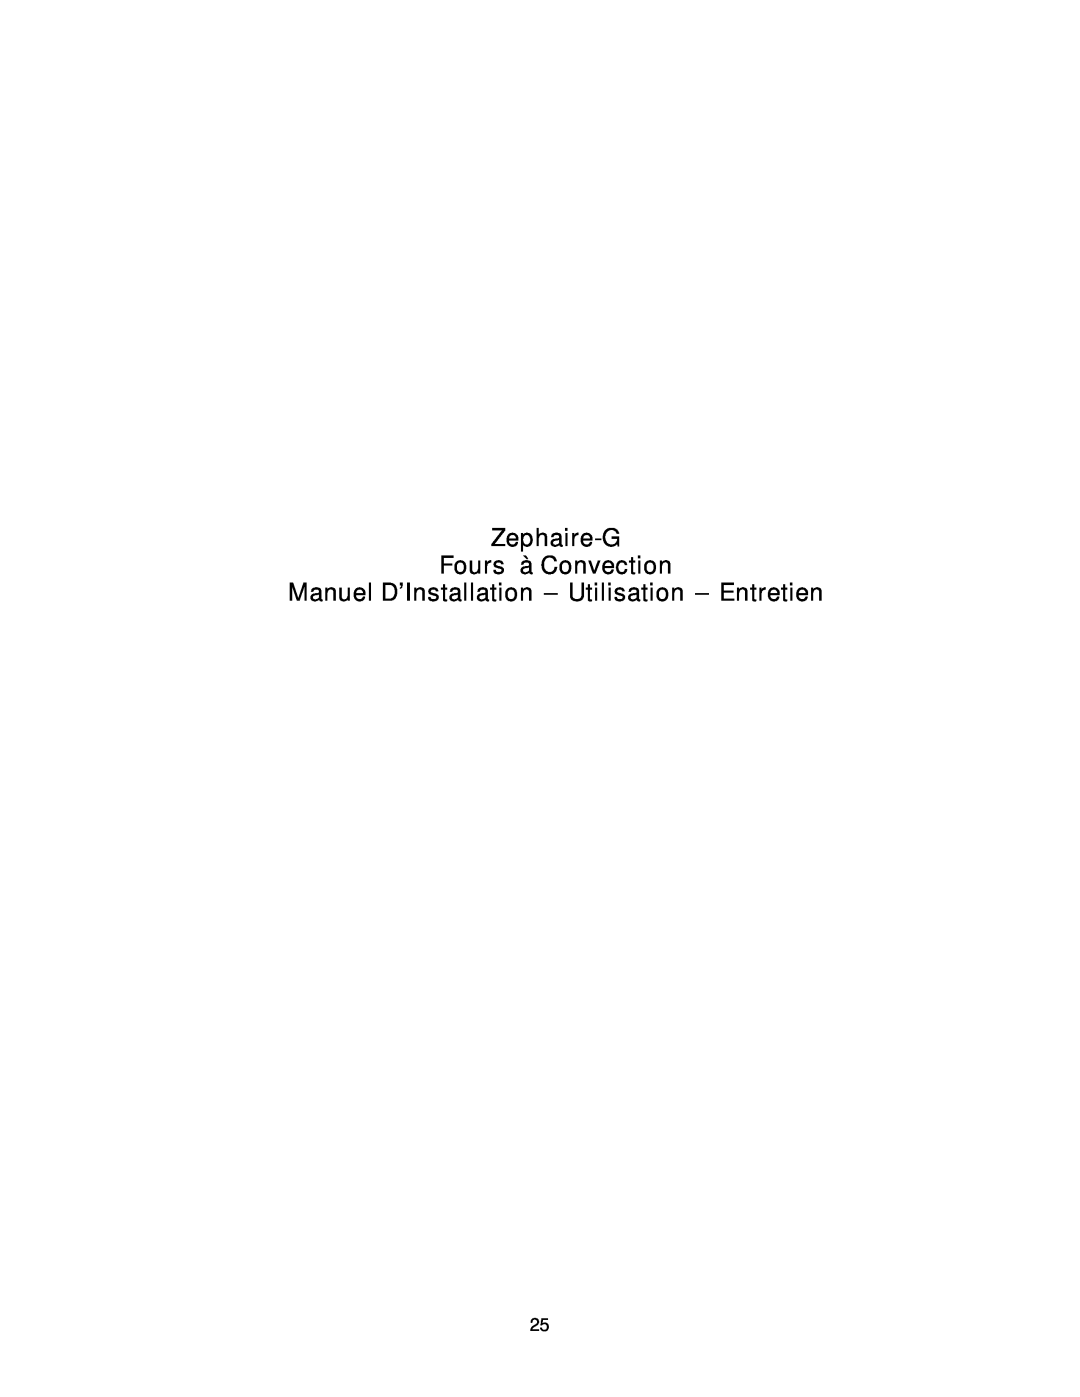 Blodgett RE Series manual Zephaire-G Fours à Convection, Manuel D’Installation --- Utilisation --- Entretien 